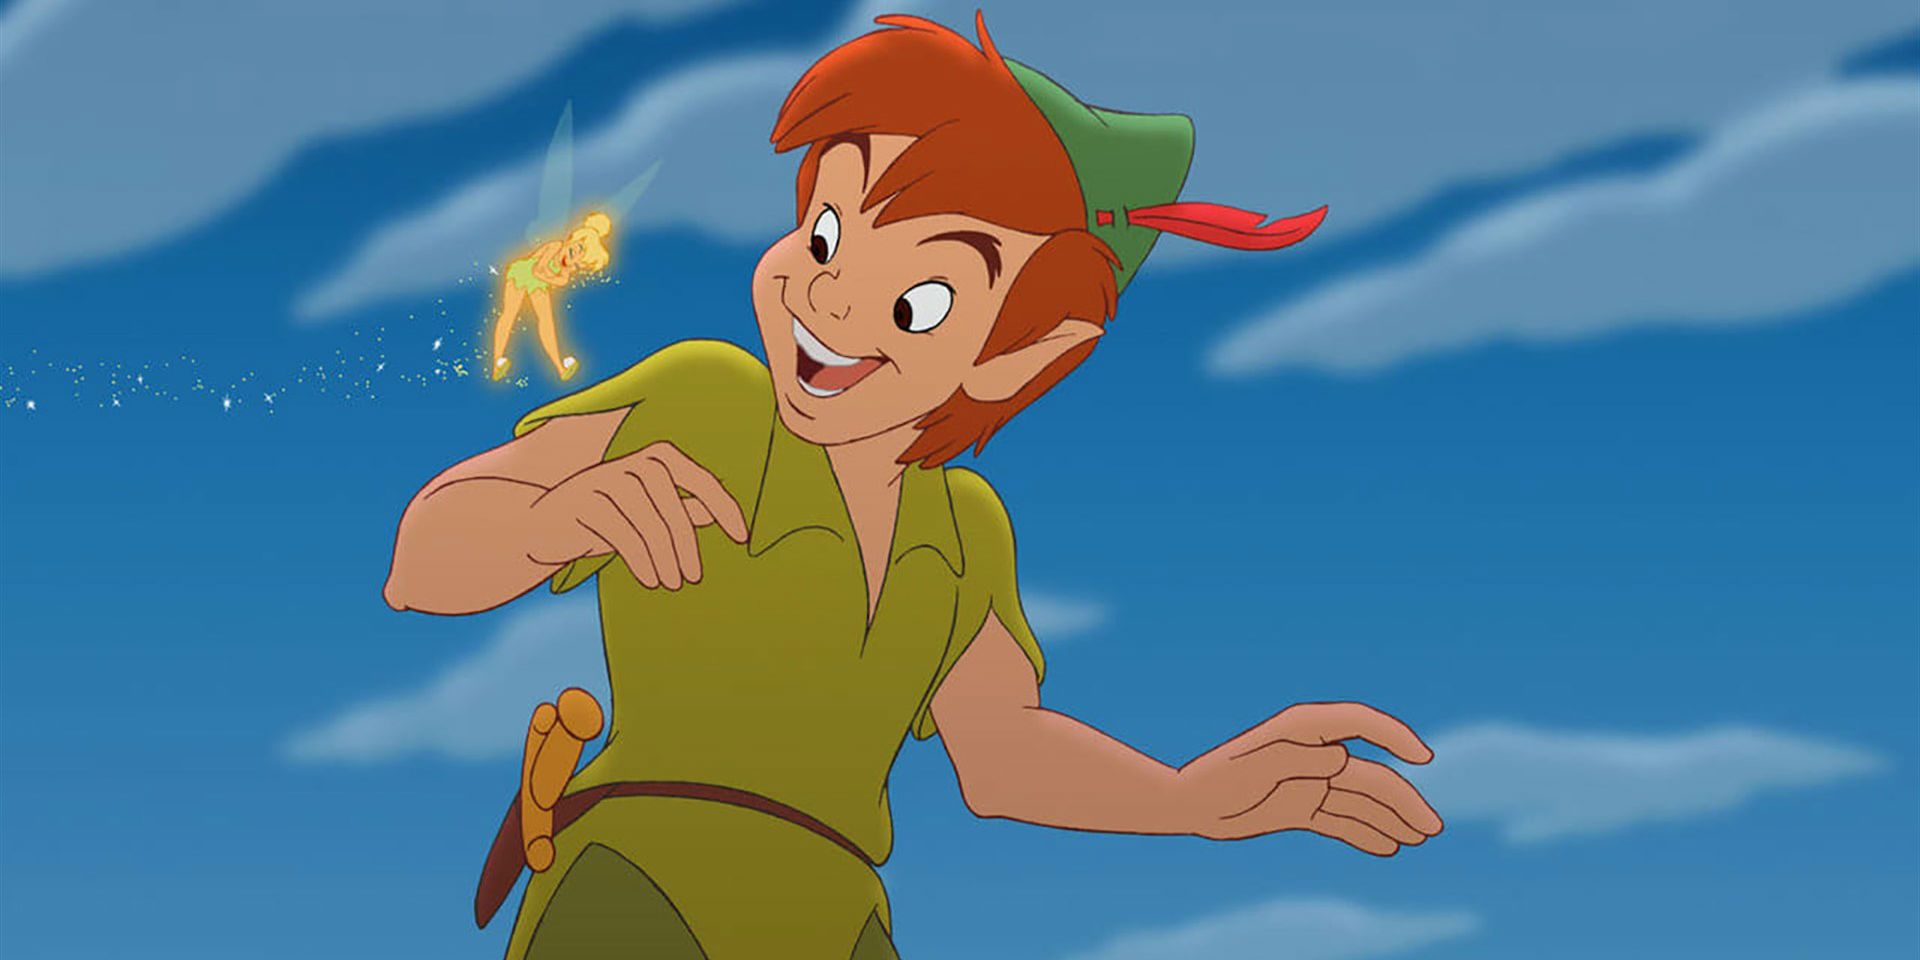 Peter Pan dan Tinkerbell - Peter Pan dari Disney